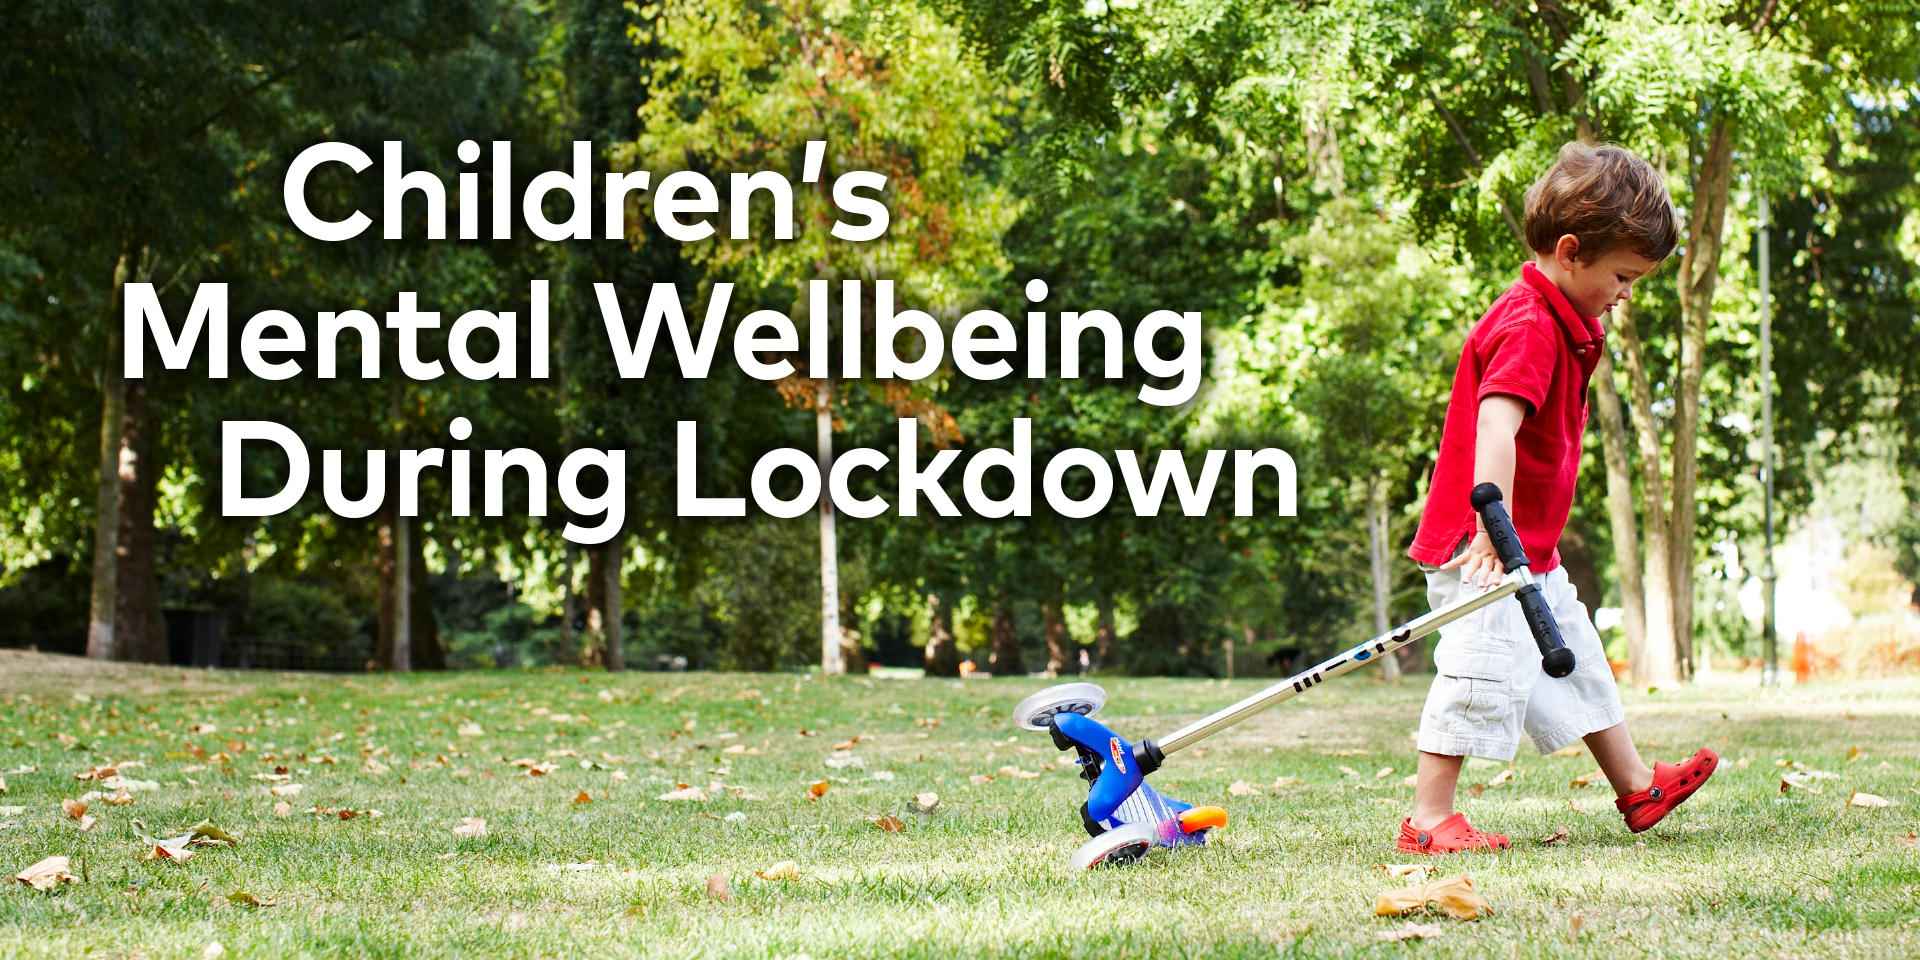 Children's Mental Wellbeing During Lockdown